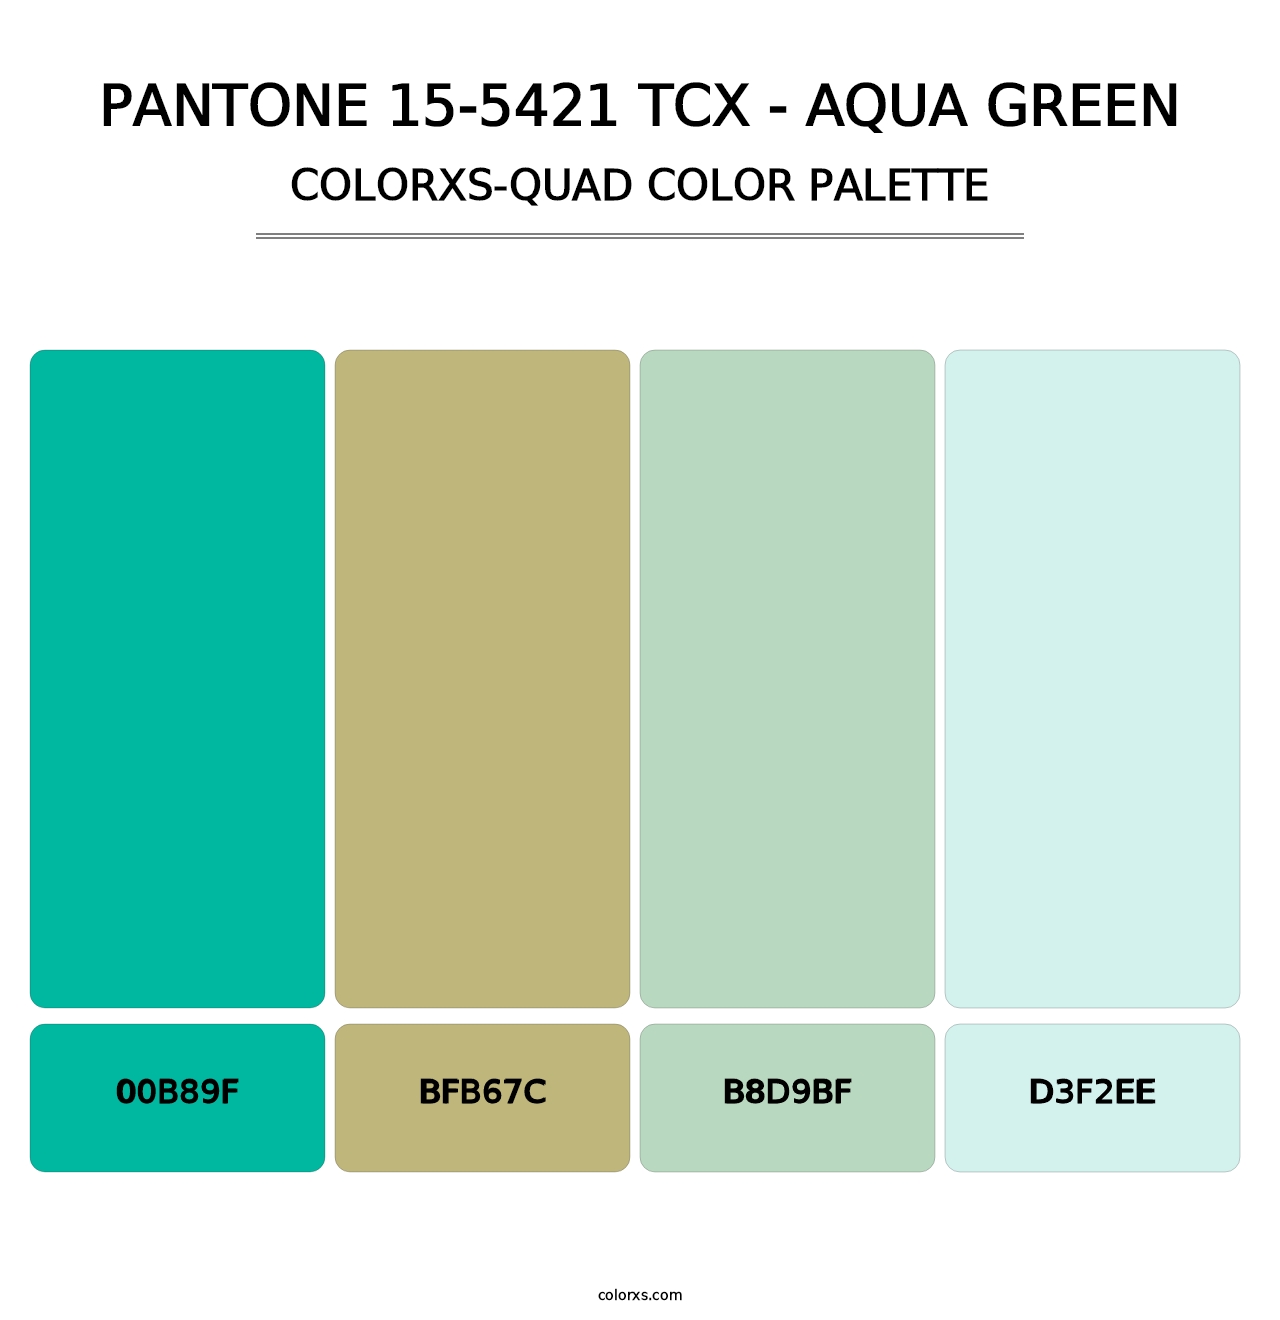 PANTONE 15-5421 TCX - Aqua Green - Colorxs Quad Palette